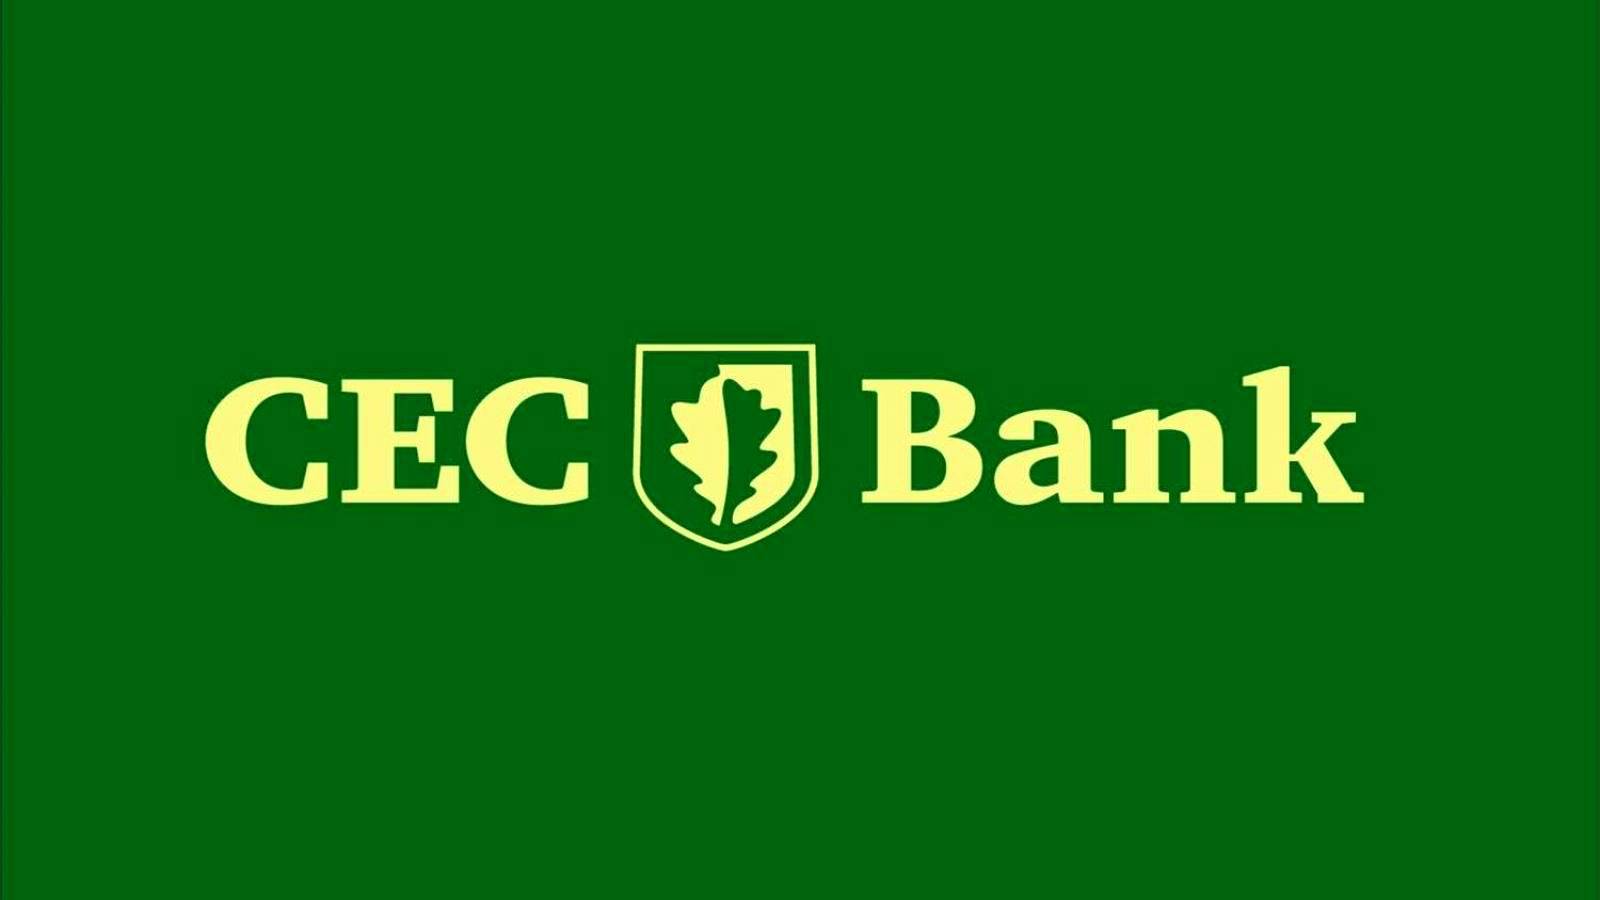 Benachrichtigung aller Kunden über die umfassende Maßnahme der CEC Bank offiziell bestätigt